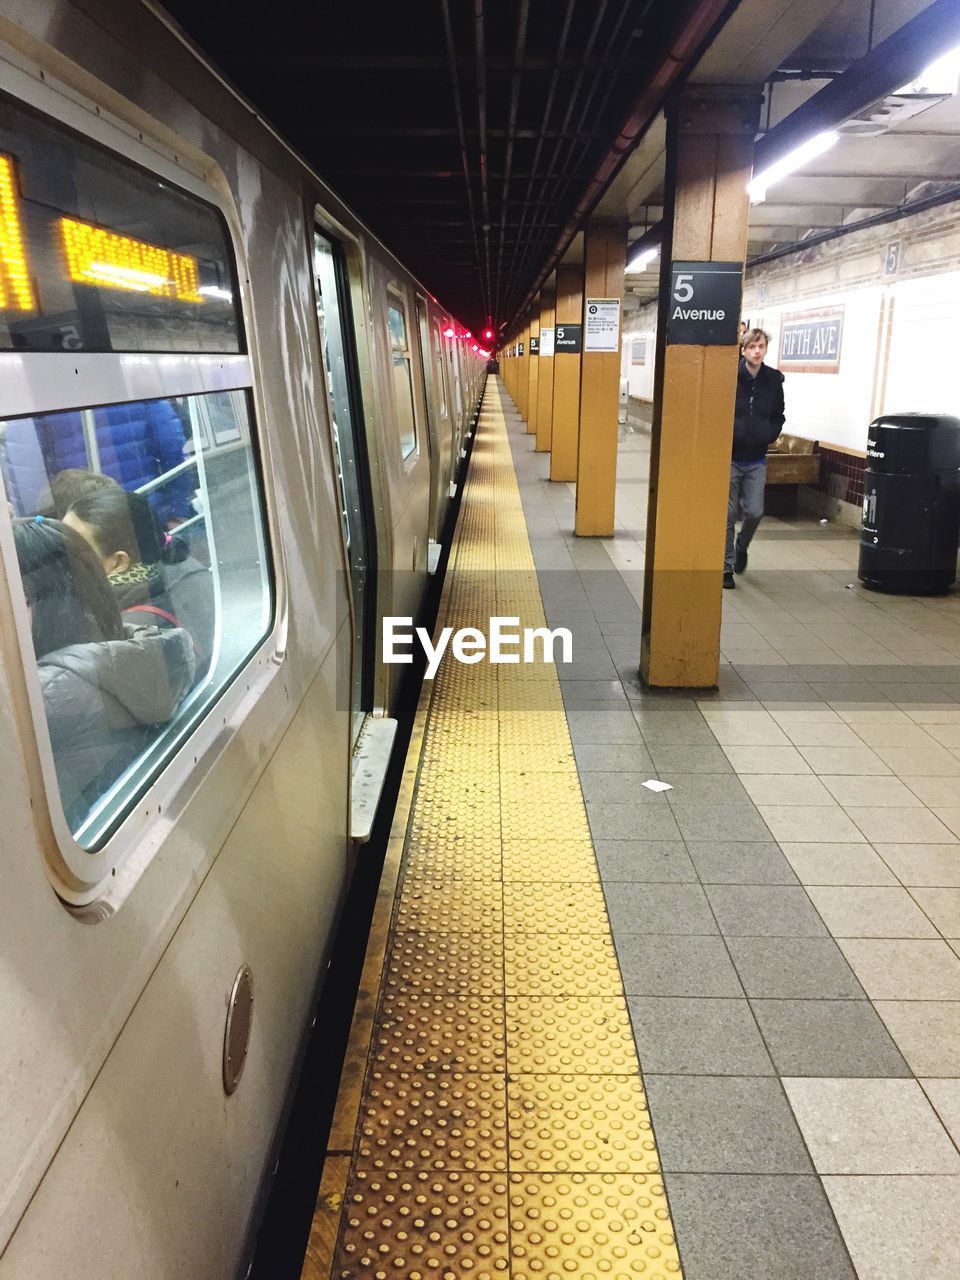 Subway train at platform